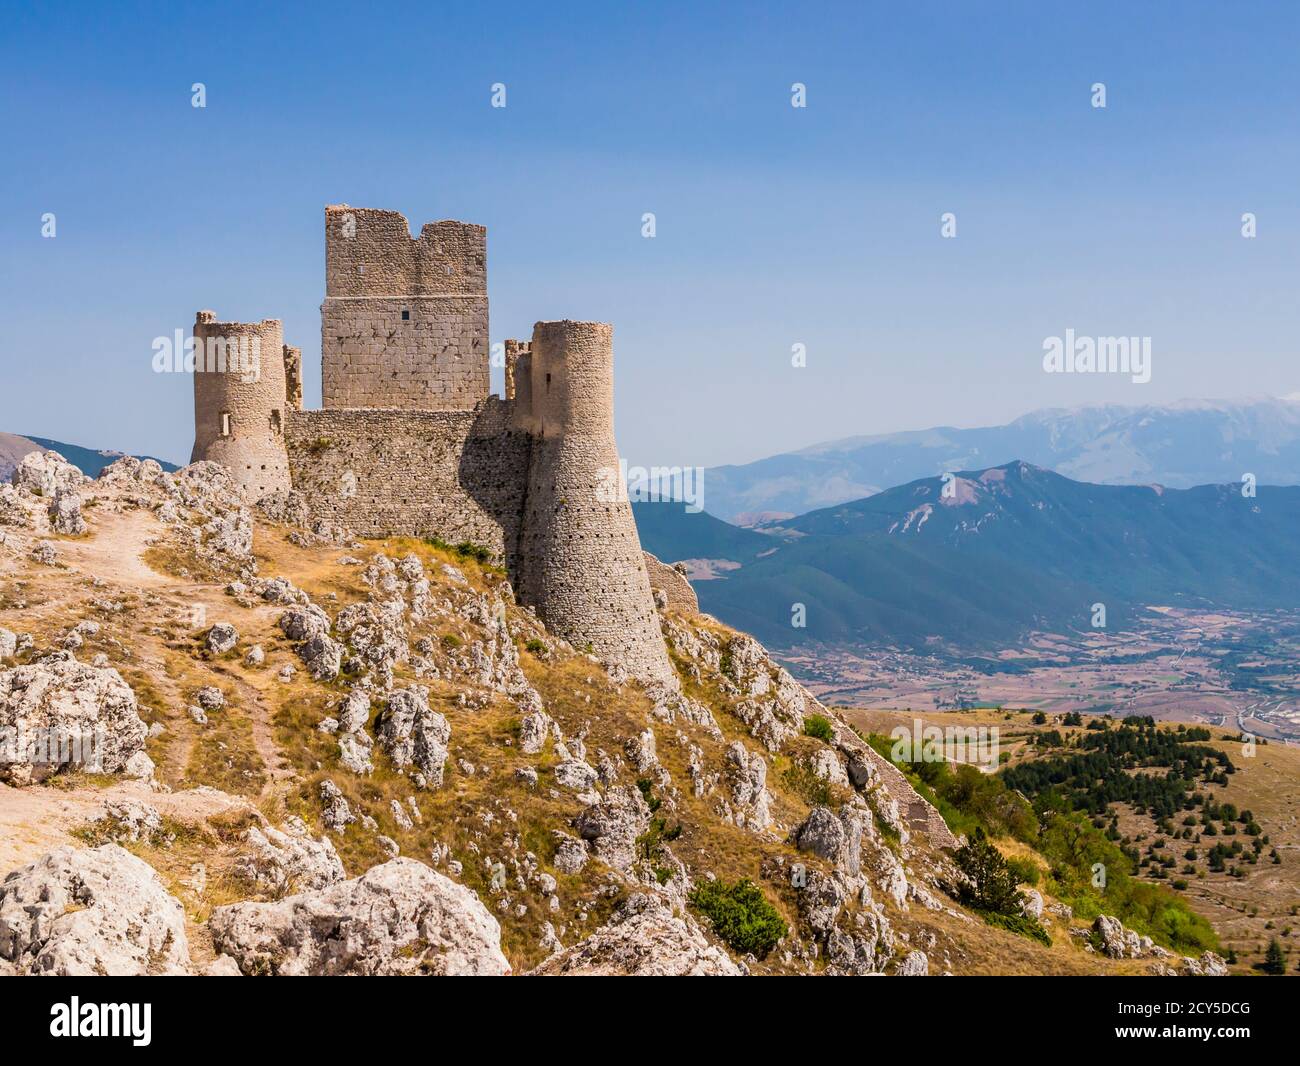 Vue évocatrice des ruines de Rocca Calascio, ancienne forteresse médiévale dans le parc national de Gran Sasso, région des Abruzzes, Italie Banque D'Images